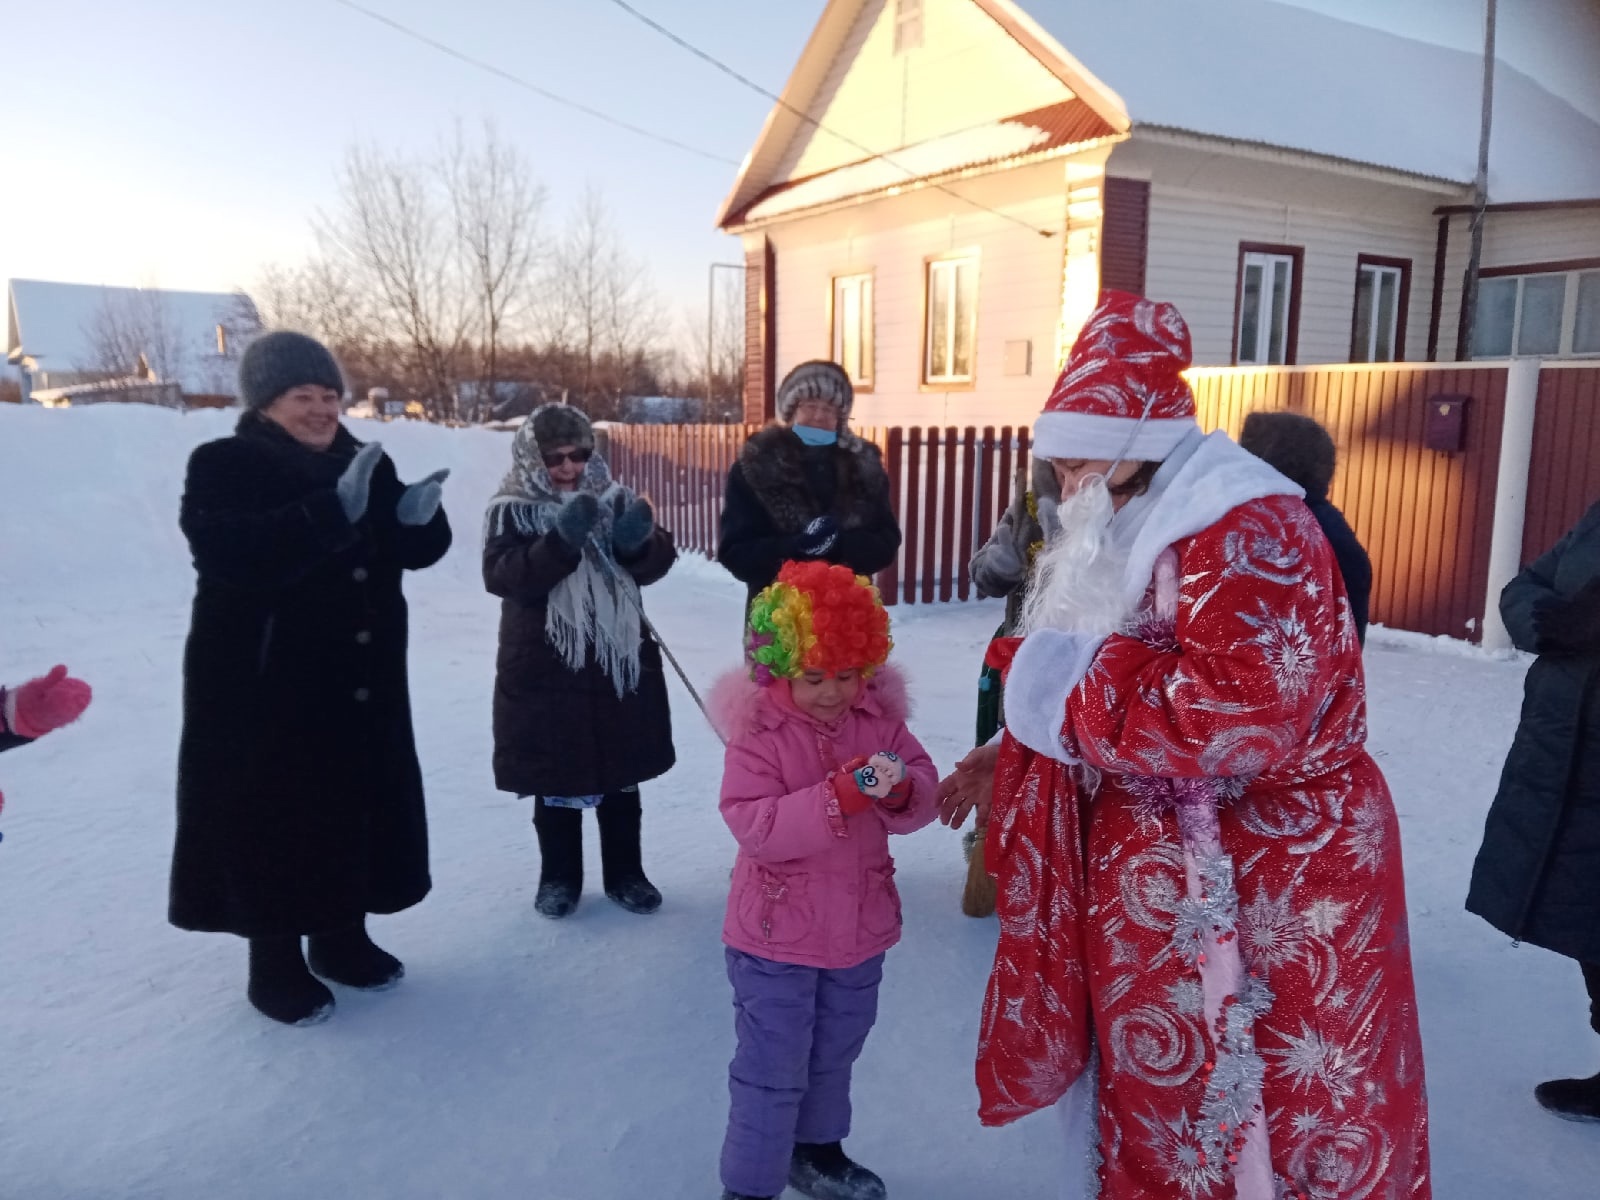 Как празднуют Новый год в Новом Язнигите, Староянзигитово и Бачкитау